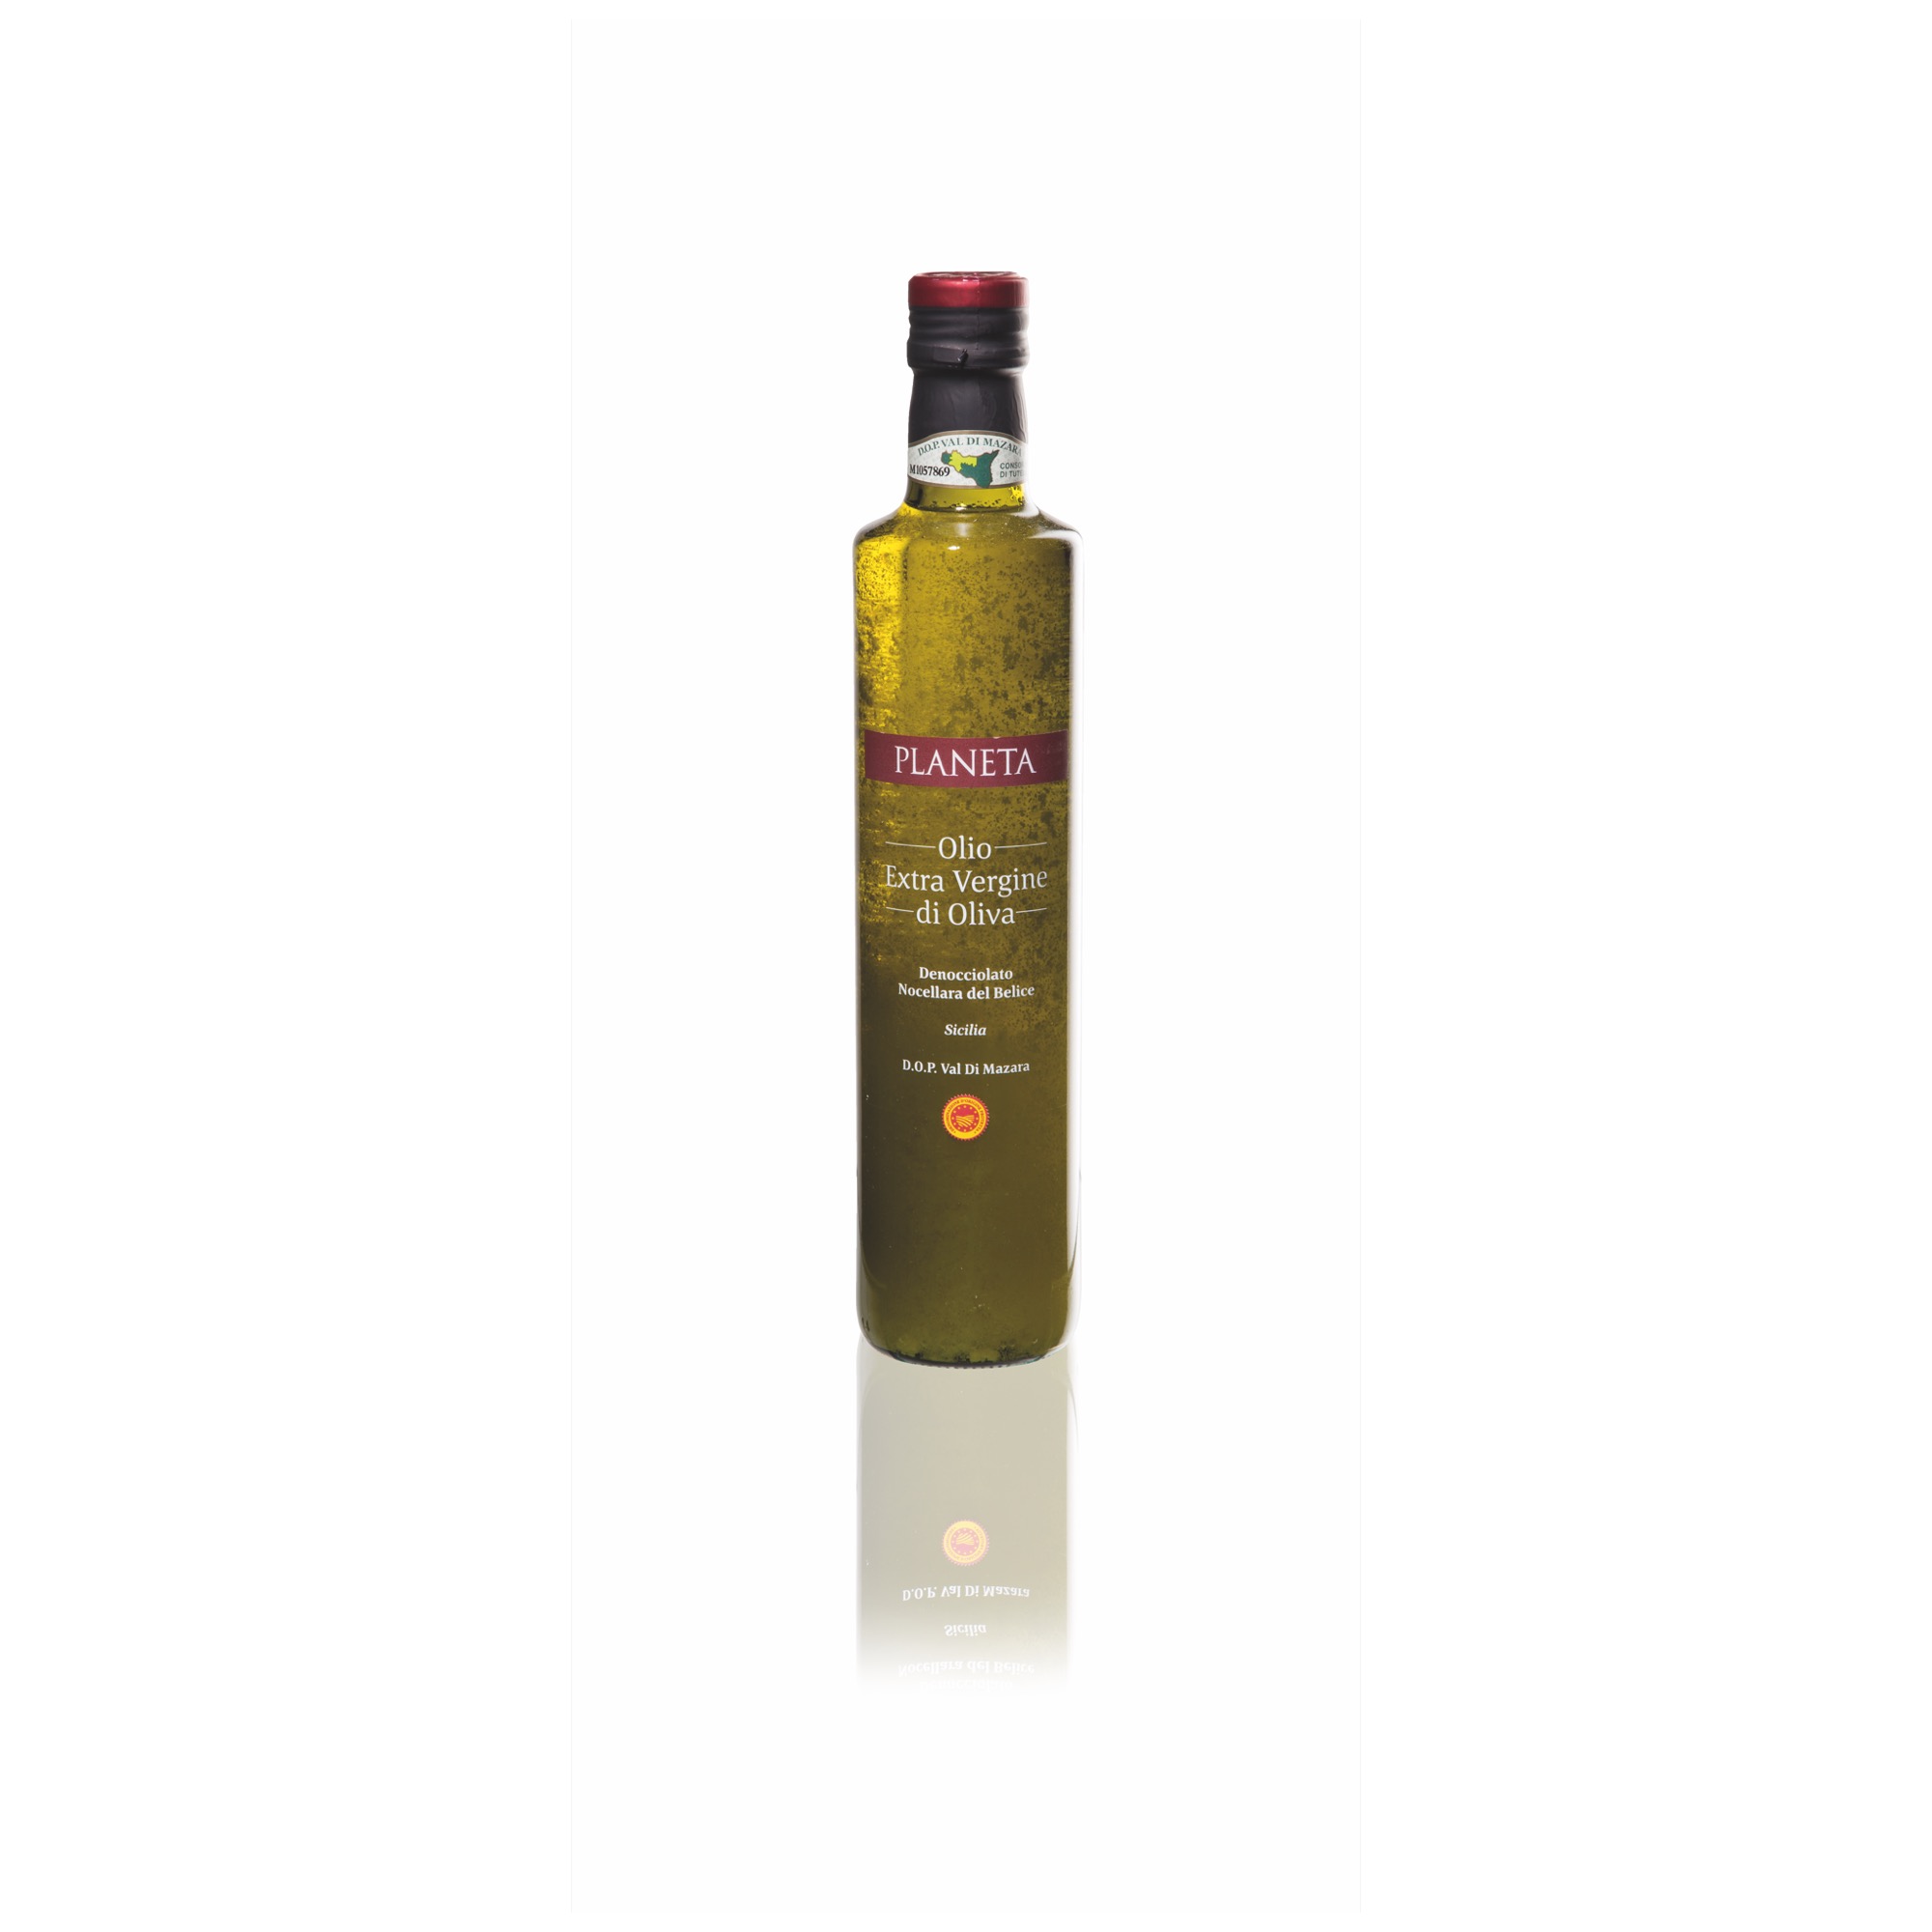 Veronelli olivový olej Nocellara 500ml